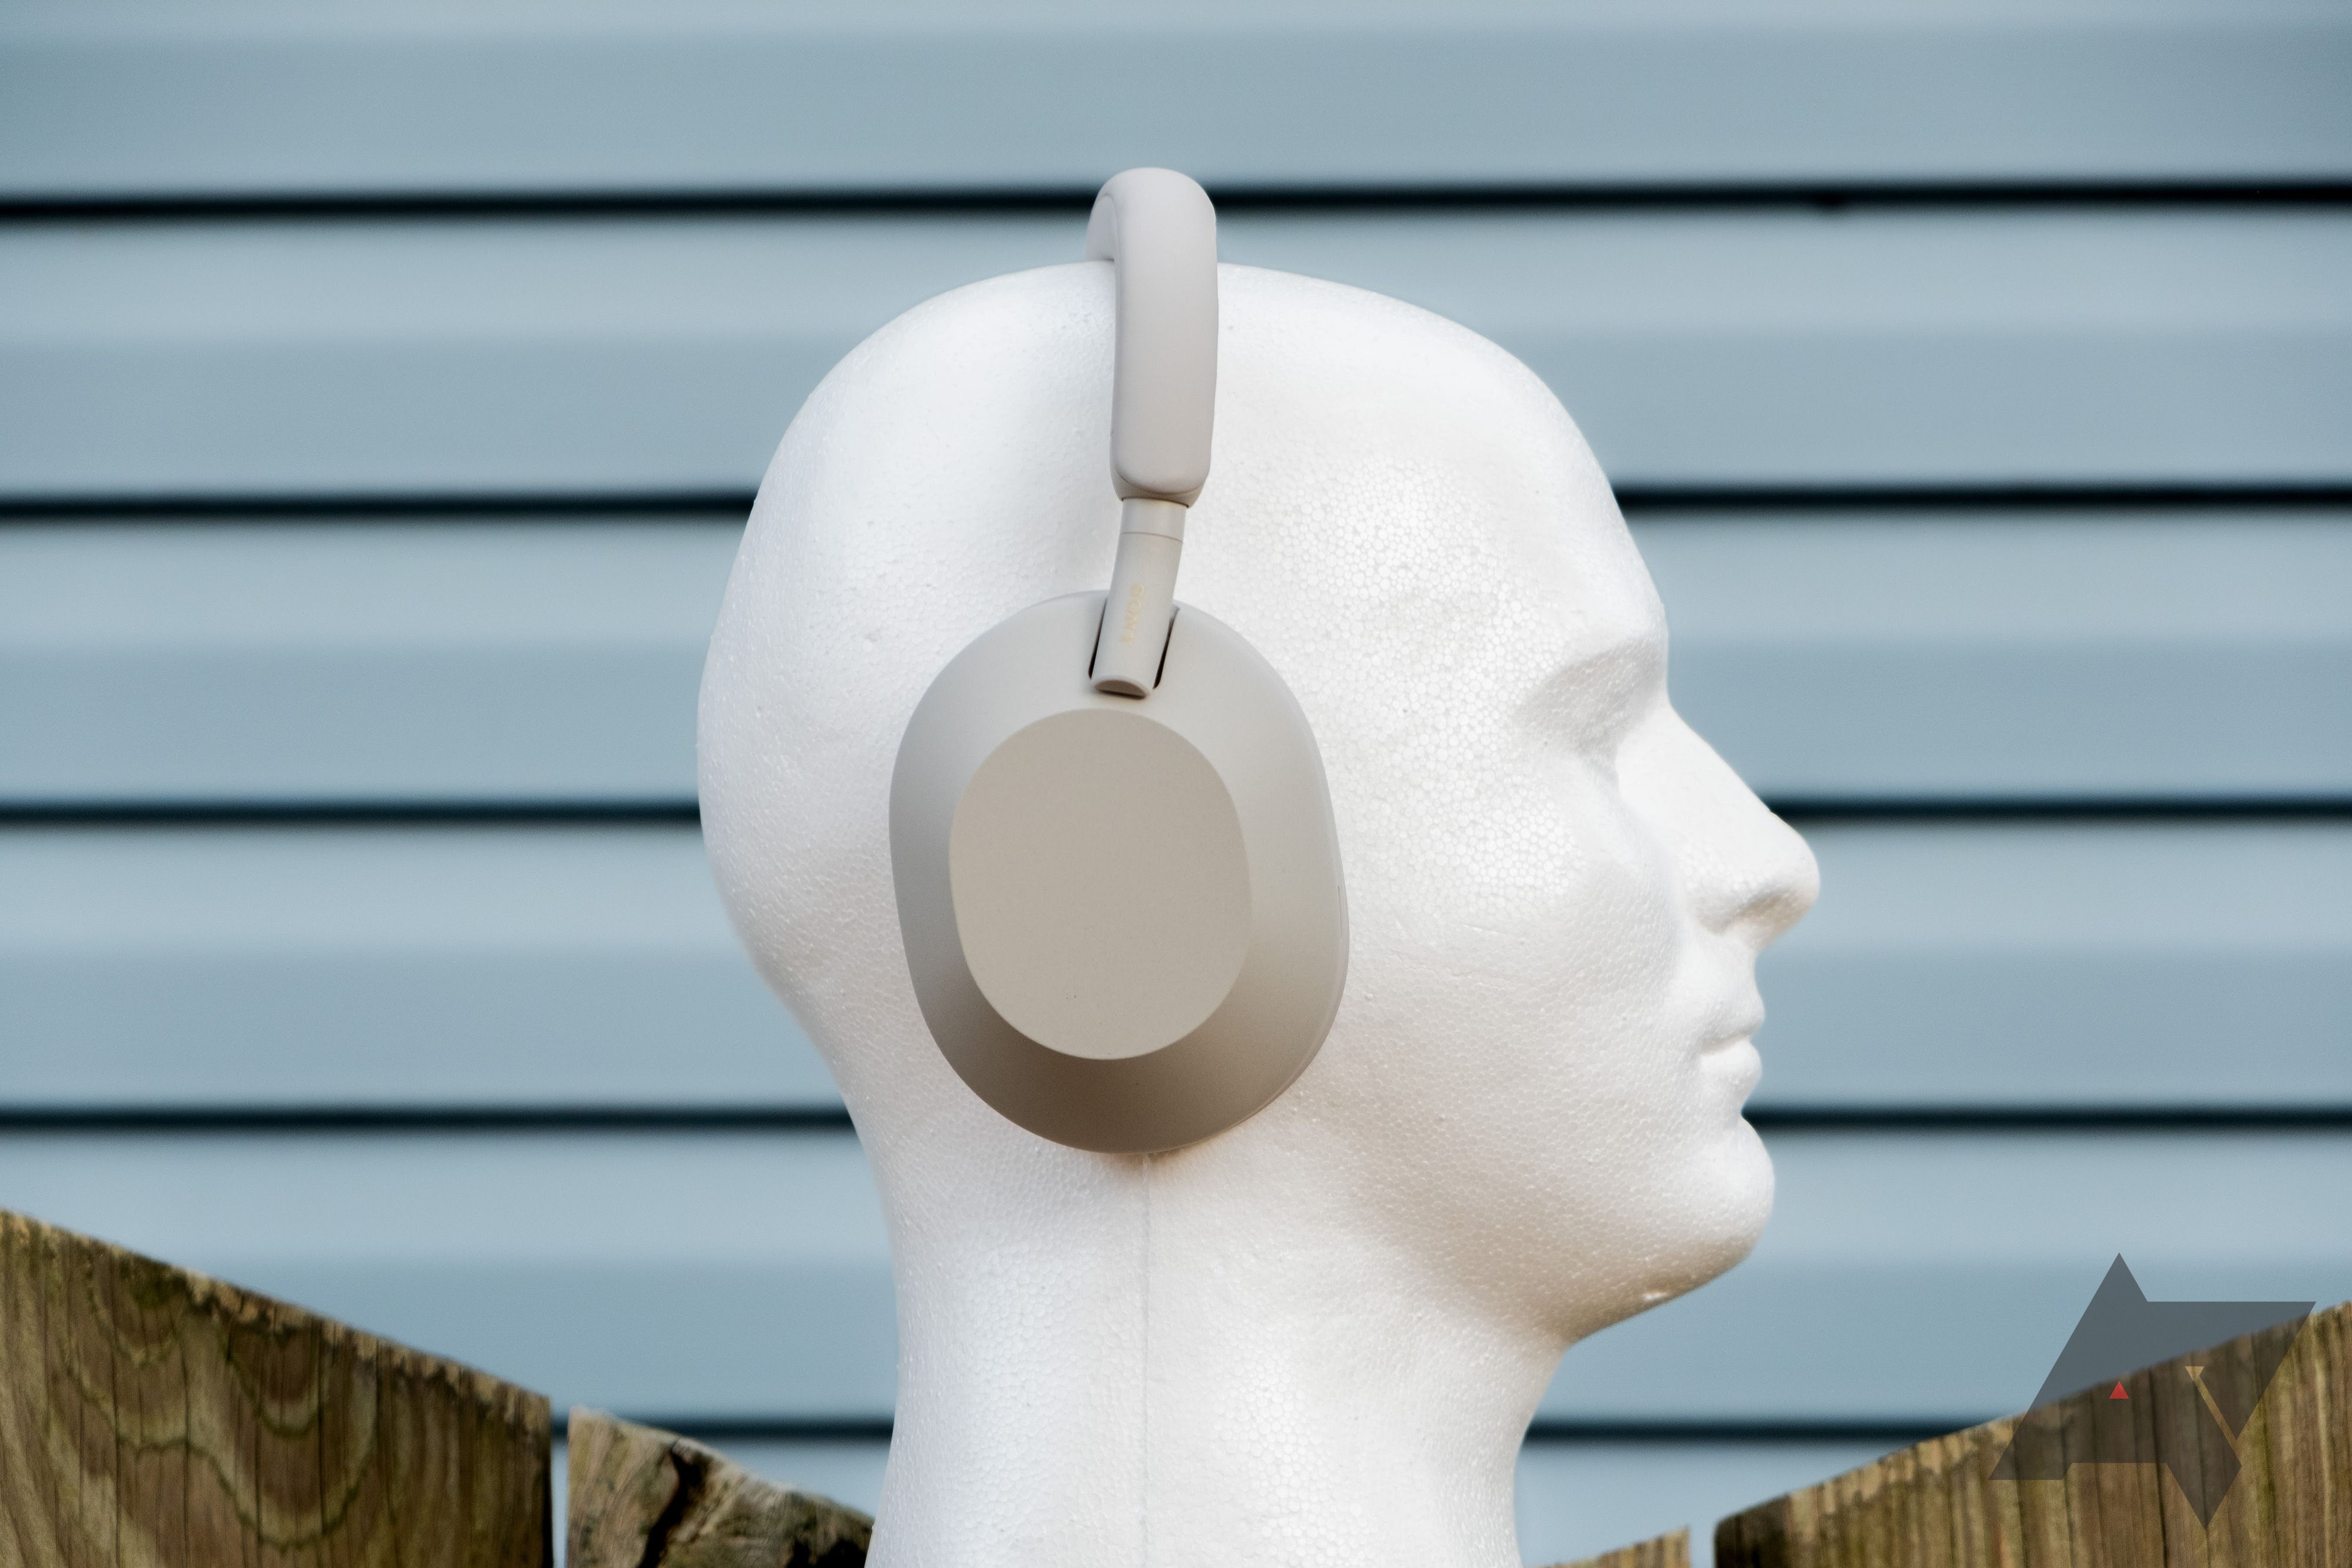 Fones de ouvido Sony WH-1000XM5 montados em um modelo em forma de cabeça humana